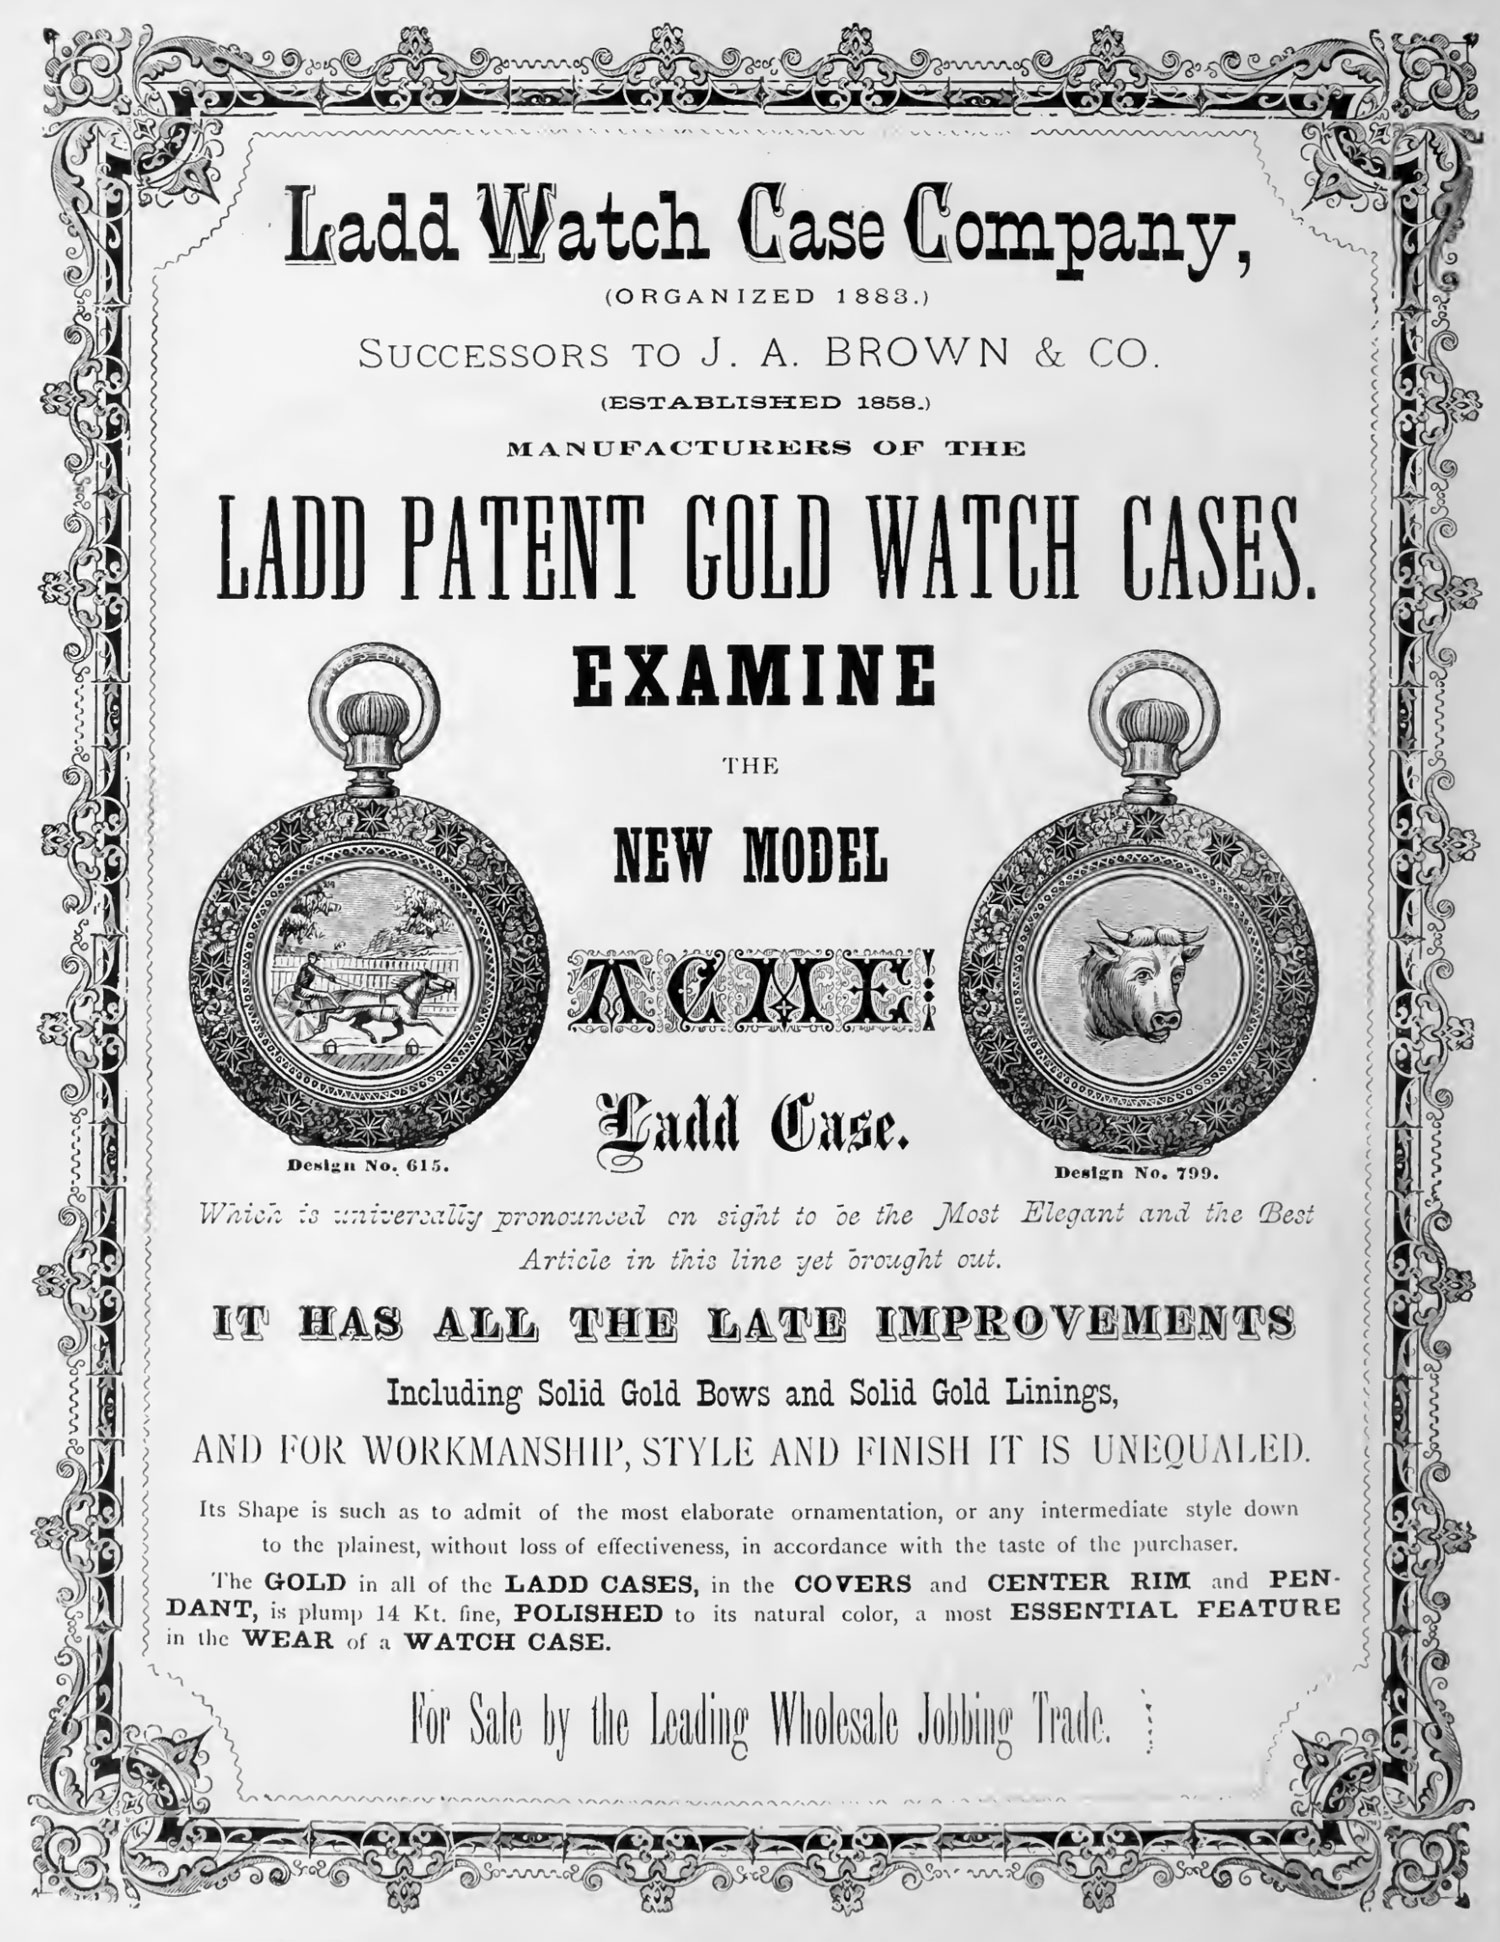 Ladd Watch Case Co. Image